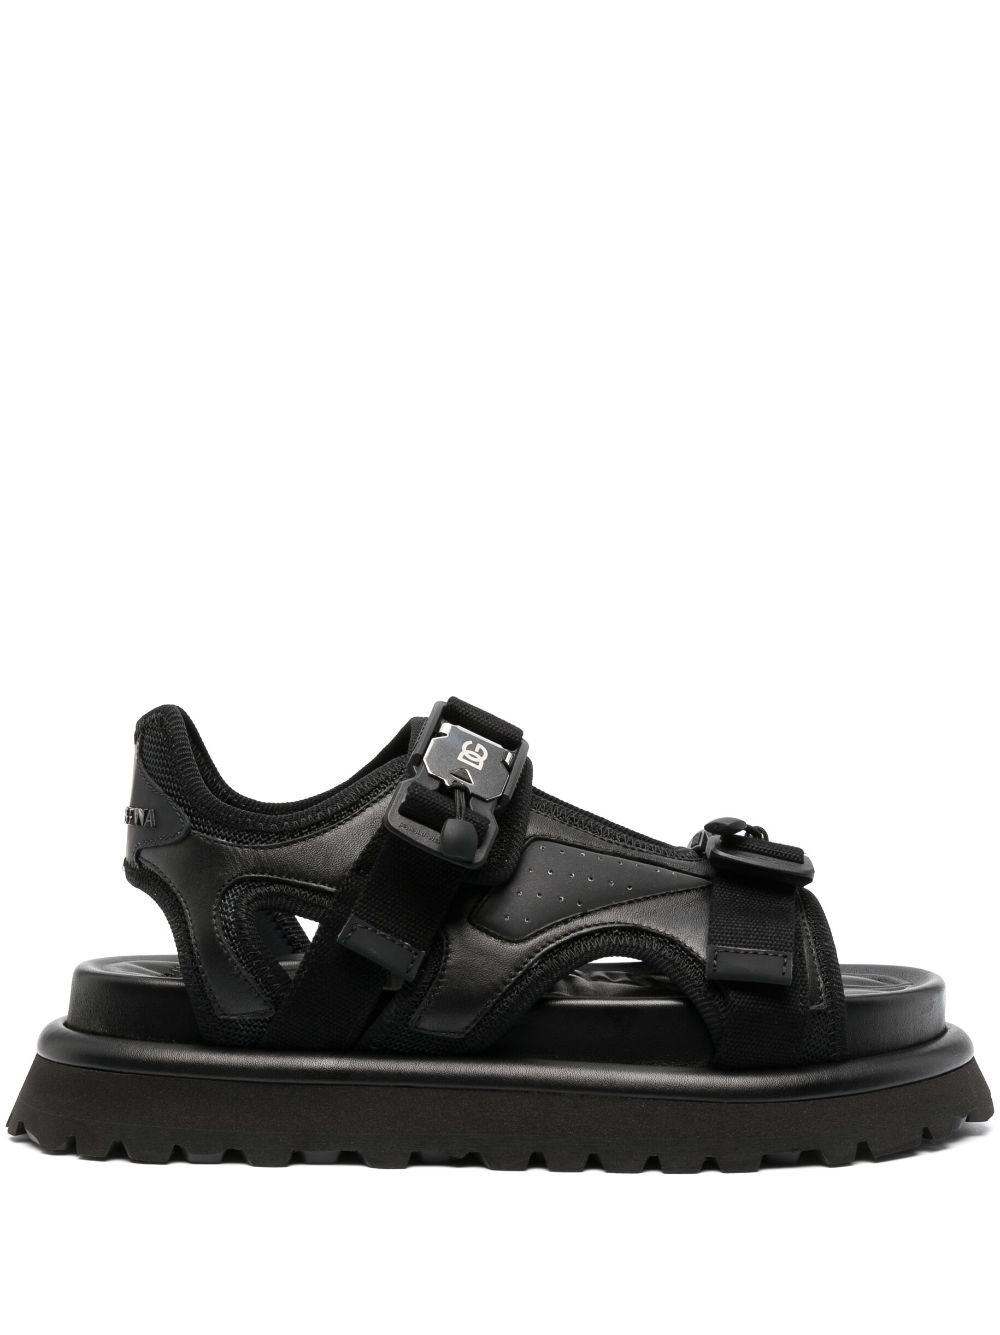 Dolce & Gabbana open-toe leather sandals - Black von Dolce & Gabbana